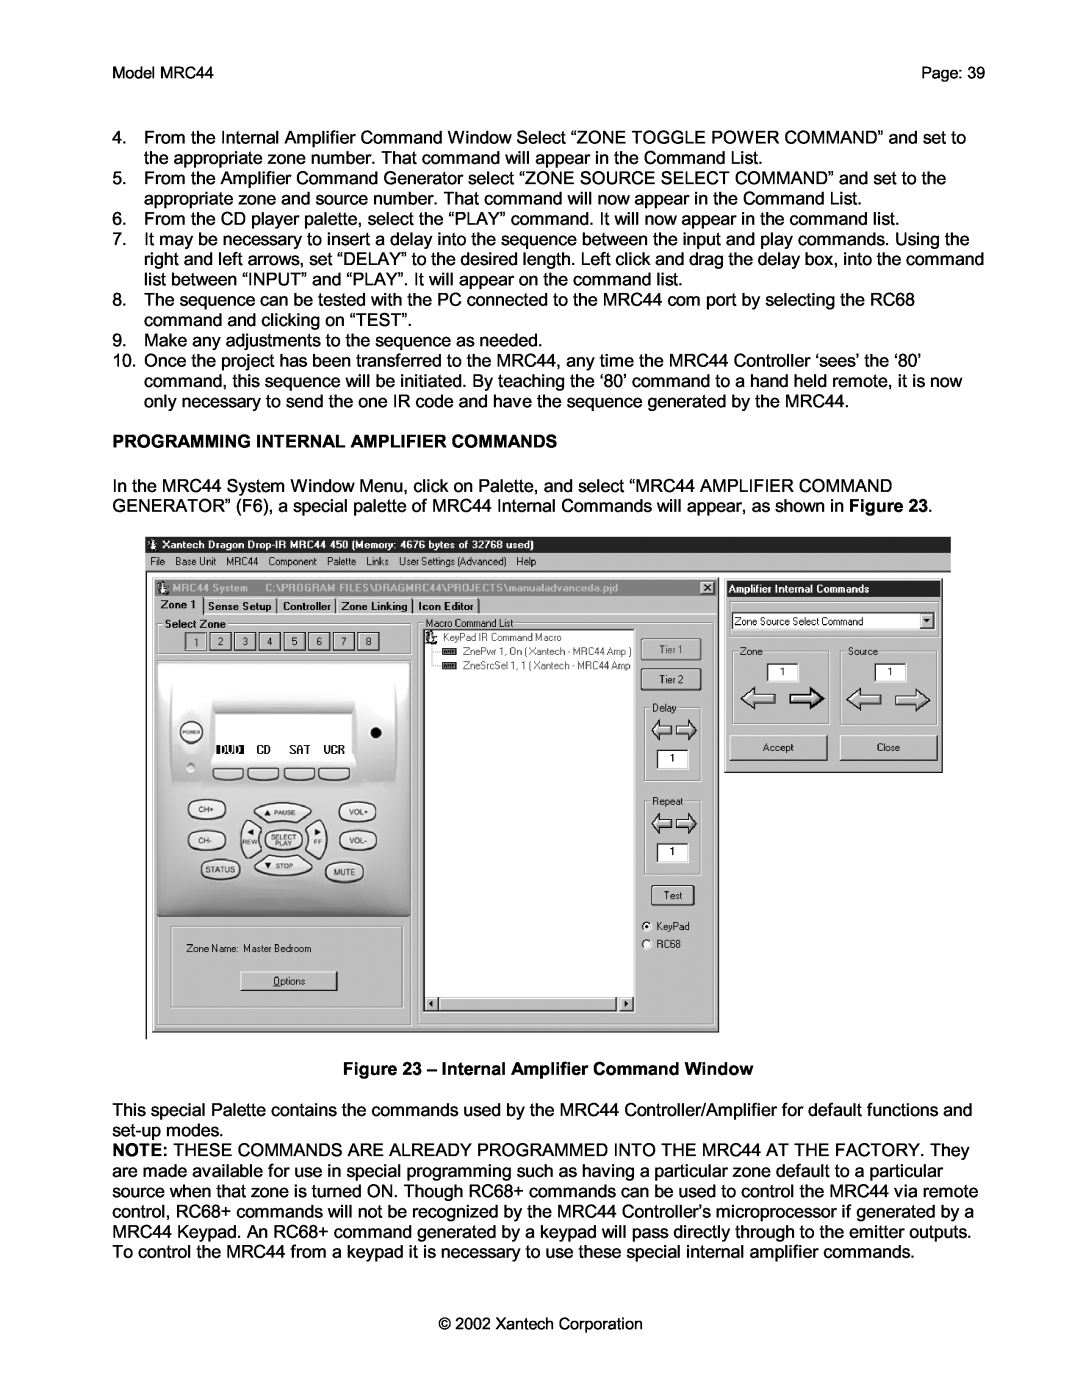 Xantech MRC44 installation instructions Programming Internal Amplifier Commands, Internal Amplifier Command Window 